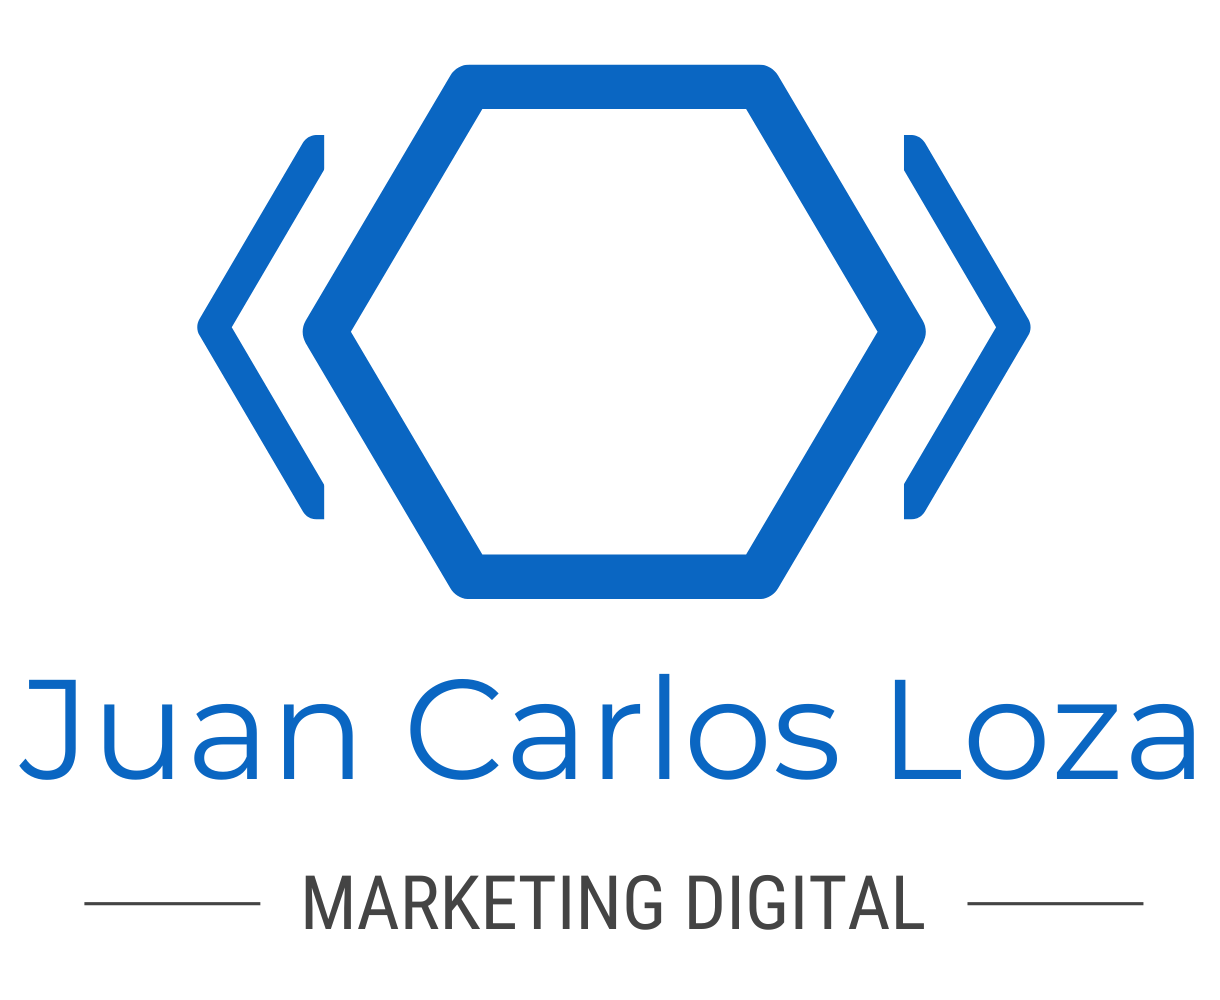 Juan Carlos Loza